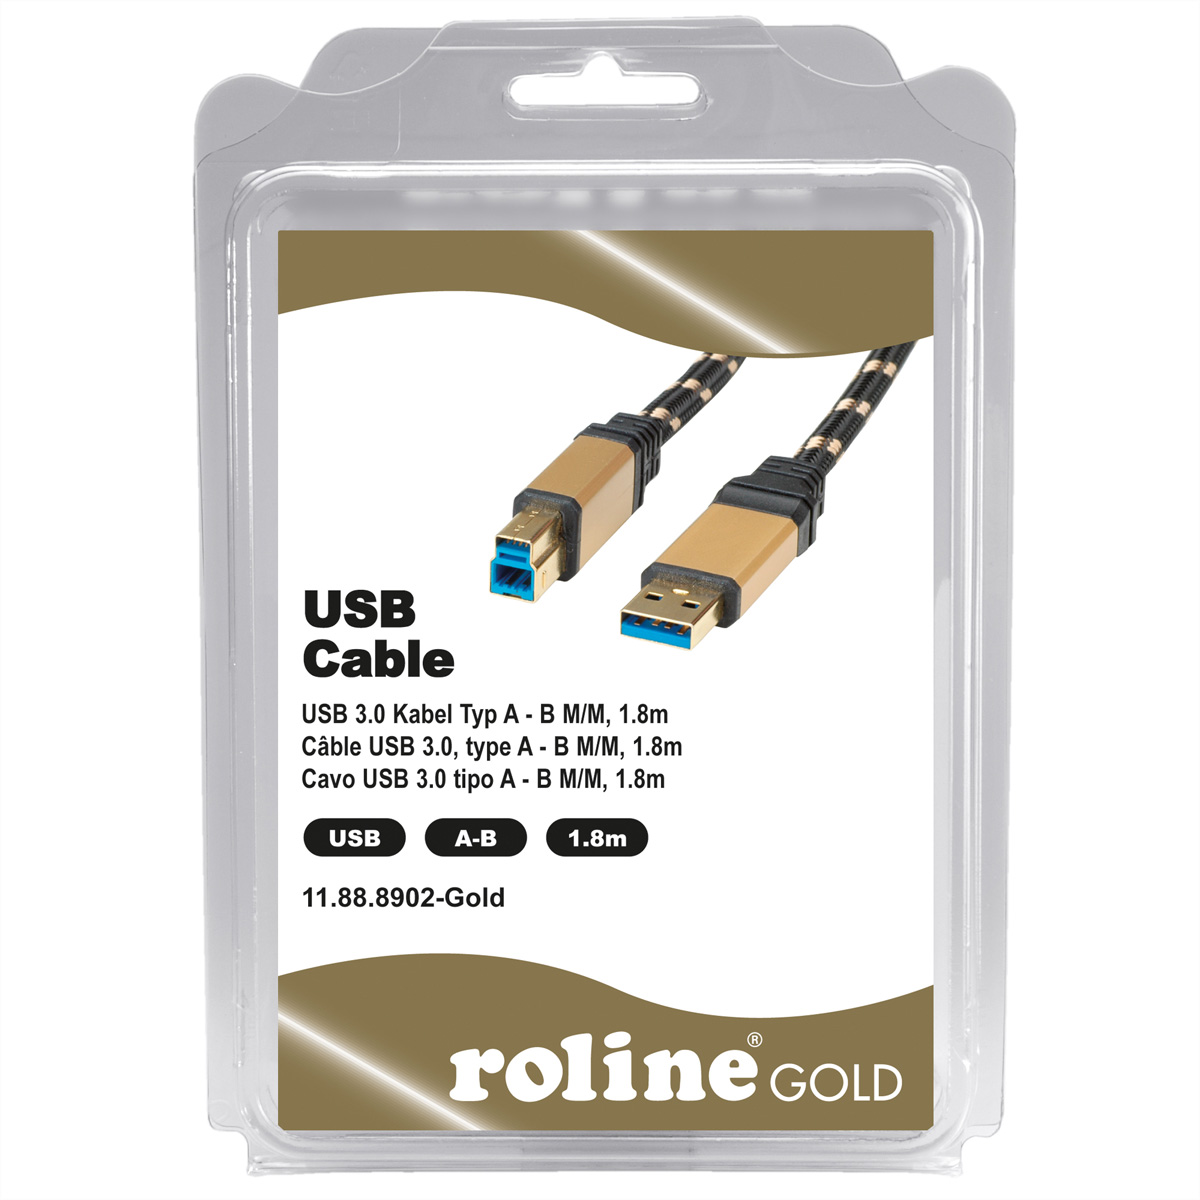 ROLINE GOLD Kabel Gen 3.2 USB 3.2 Kabel, Typ A-B 1 USB